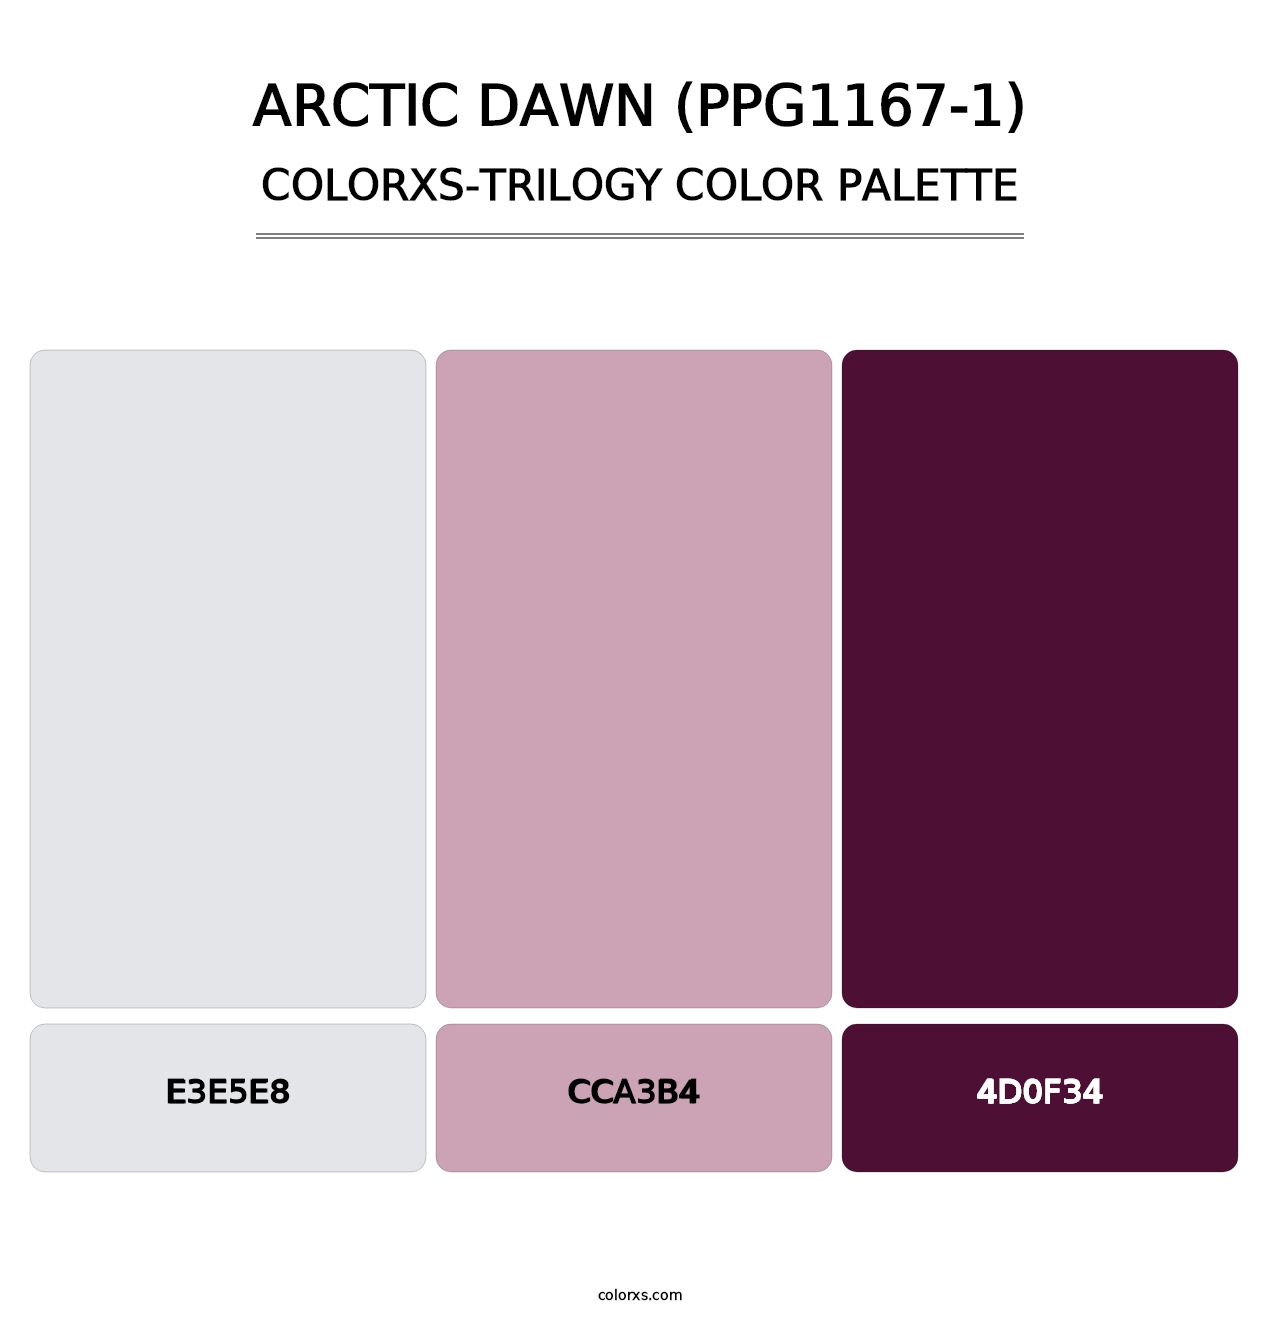 Arctic Dawn (PPG1167-1) - Colorxs Trilogy Palette